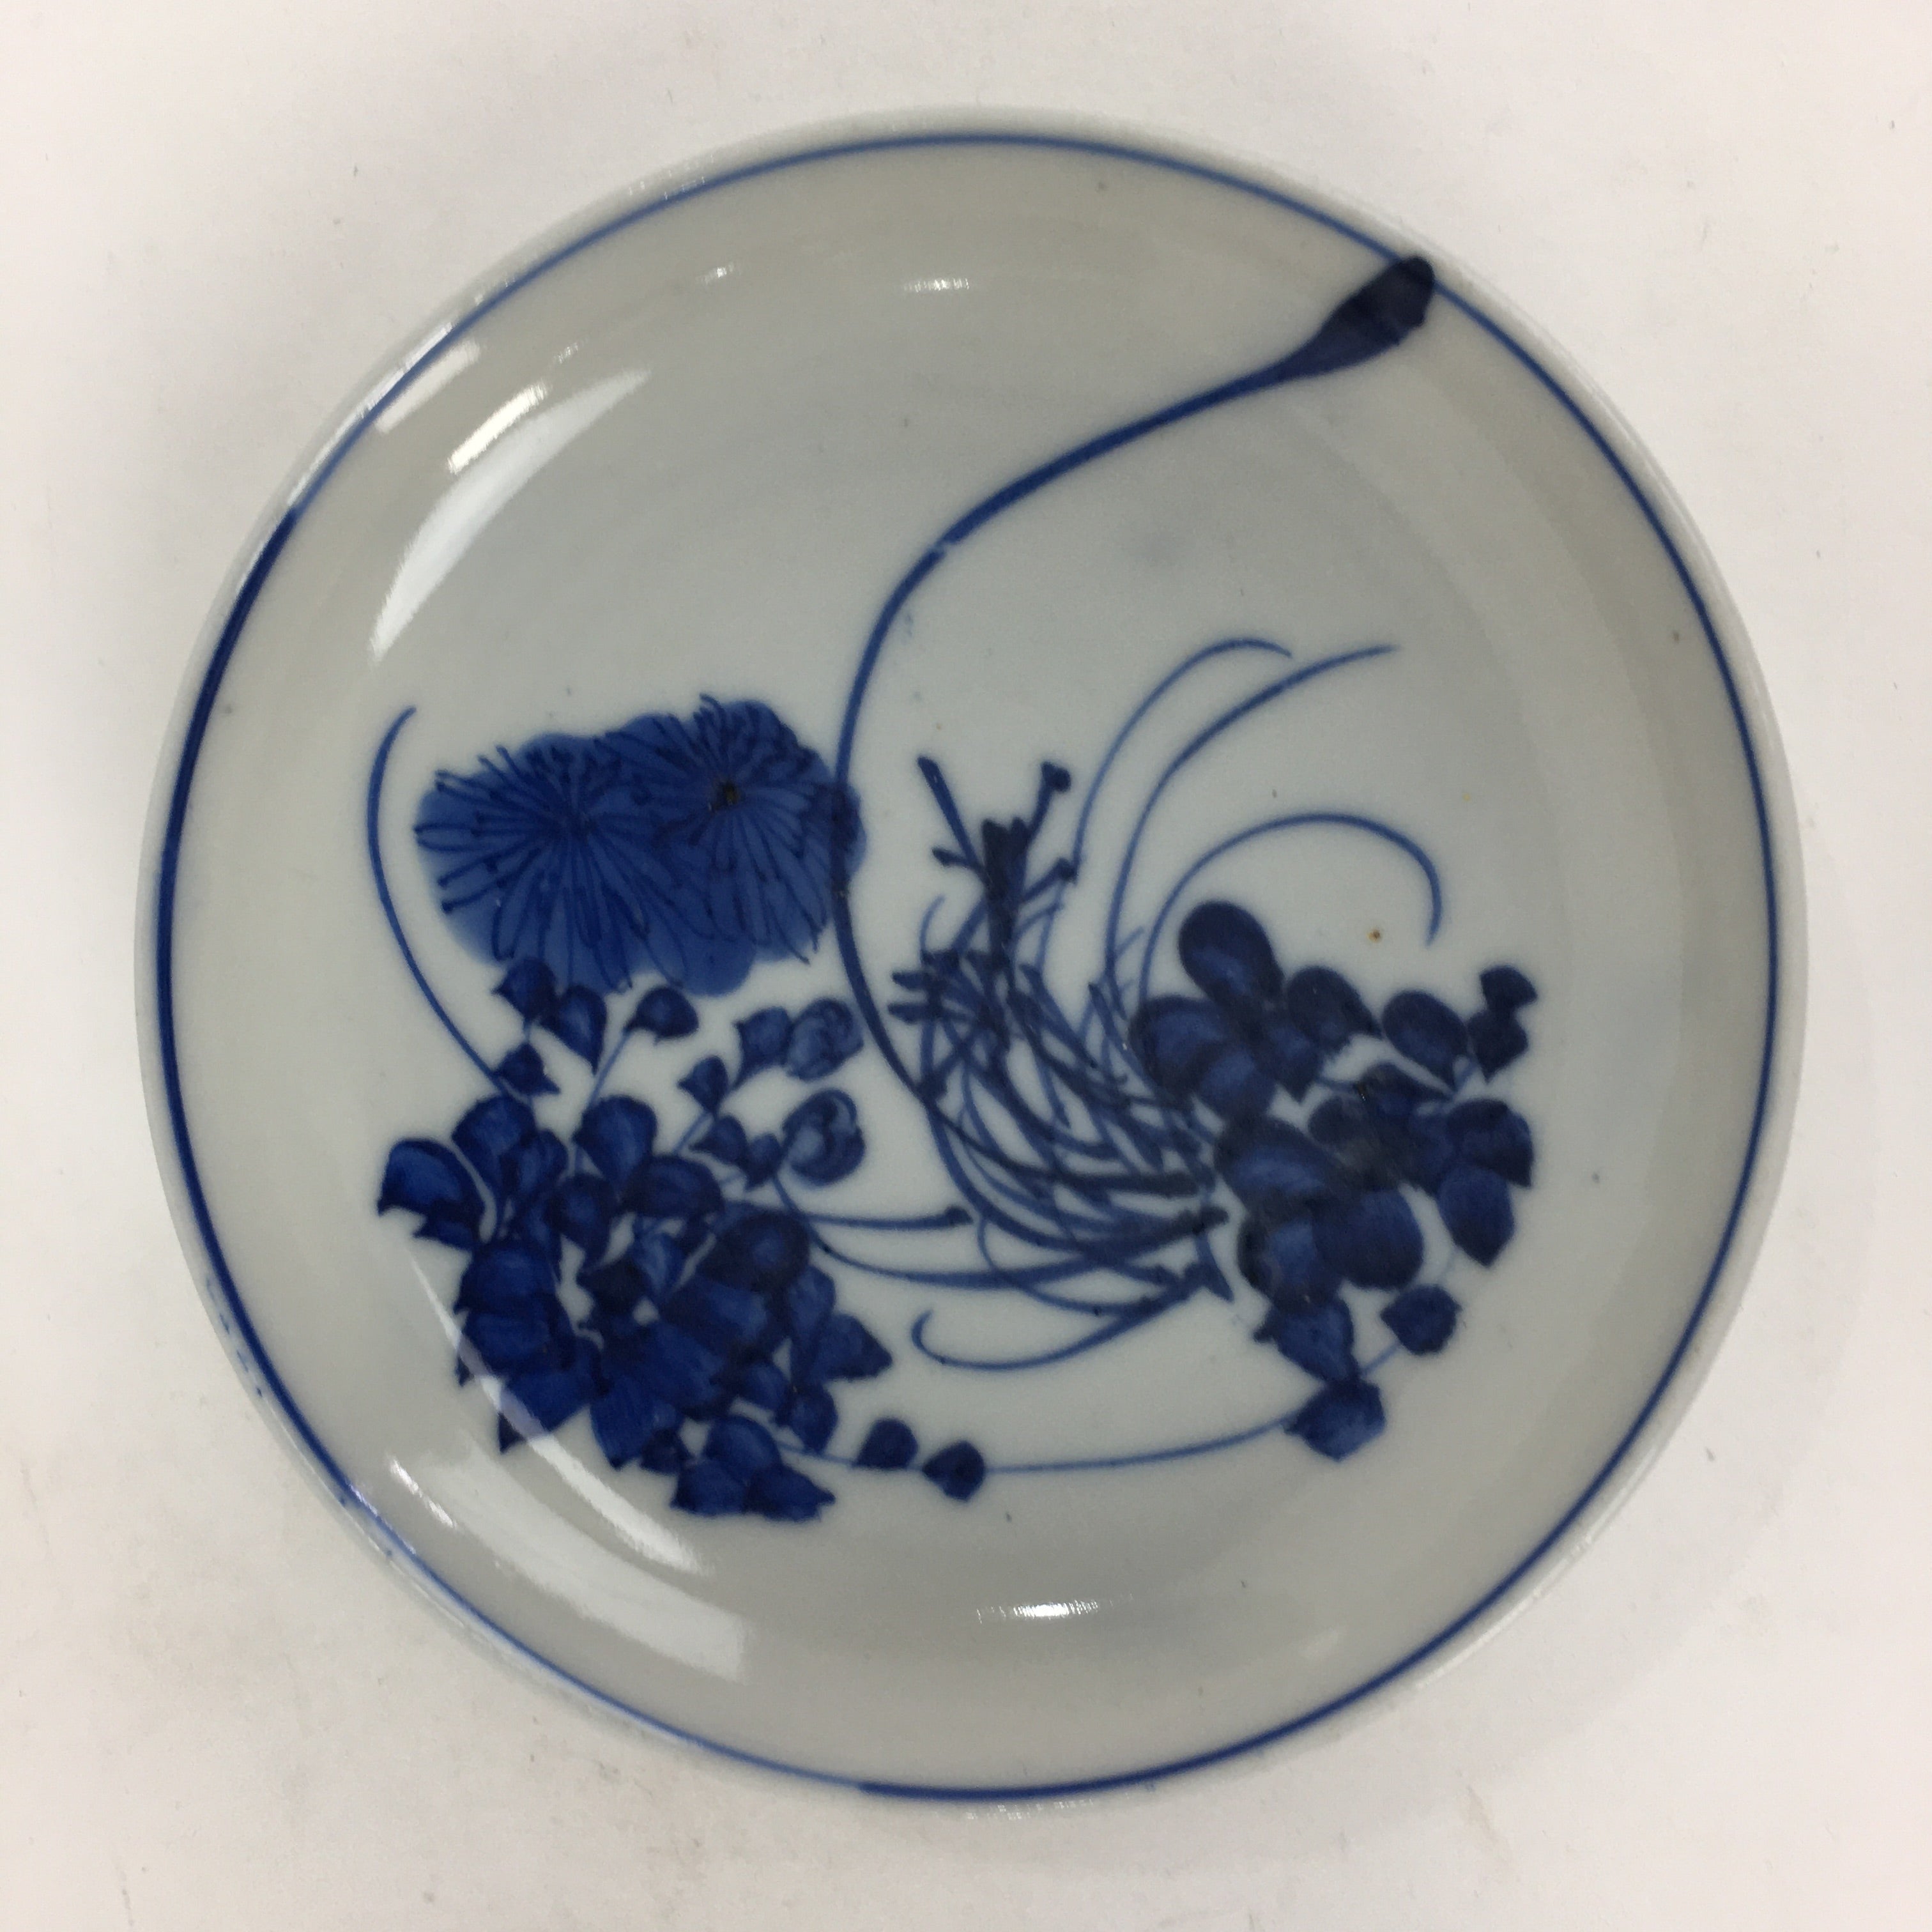 Japanese Porcelain Small Plate Kozara Vtg Blue Flower Dandelion Kozara PP804